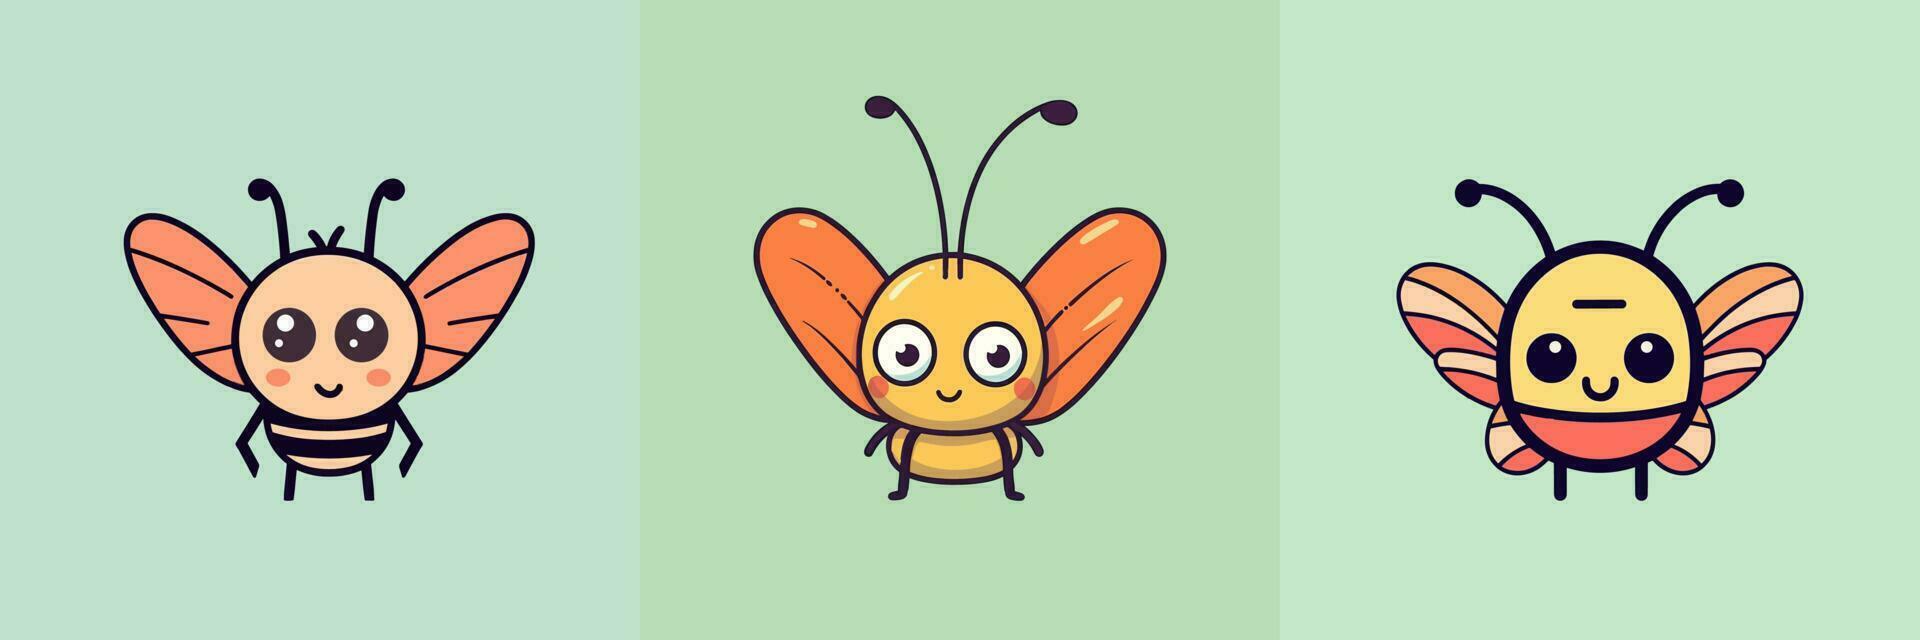 linda kawaii insecto loco dibujos animados ilustración vector